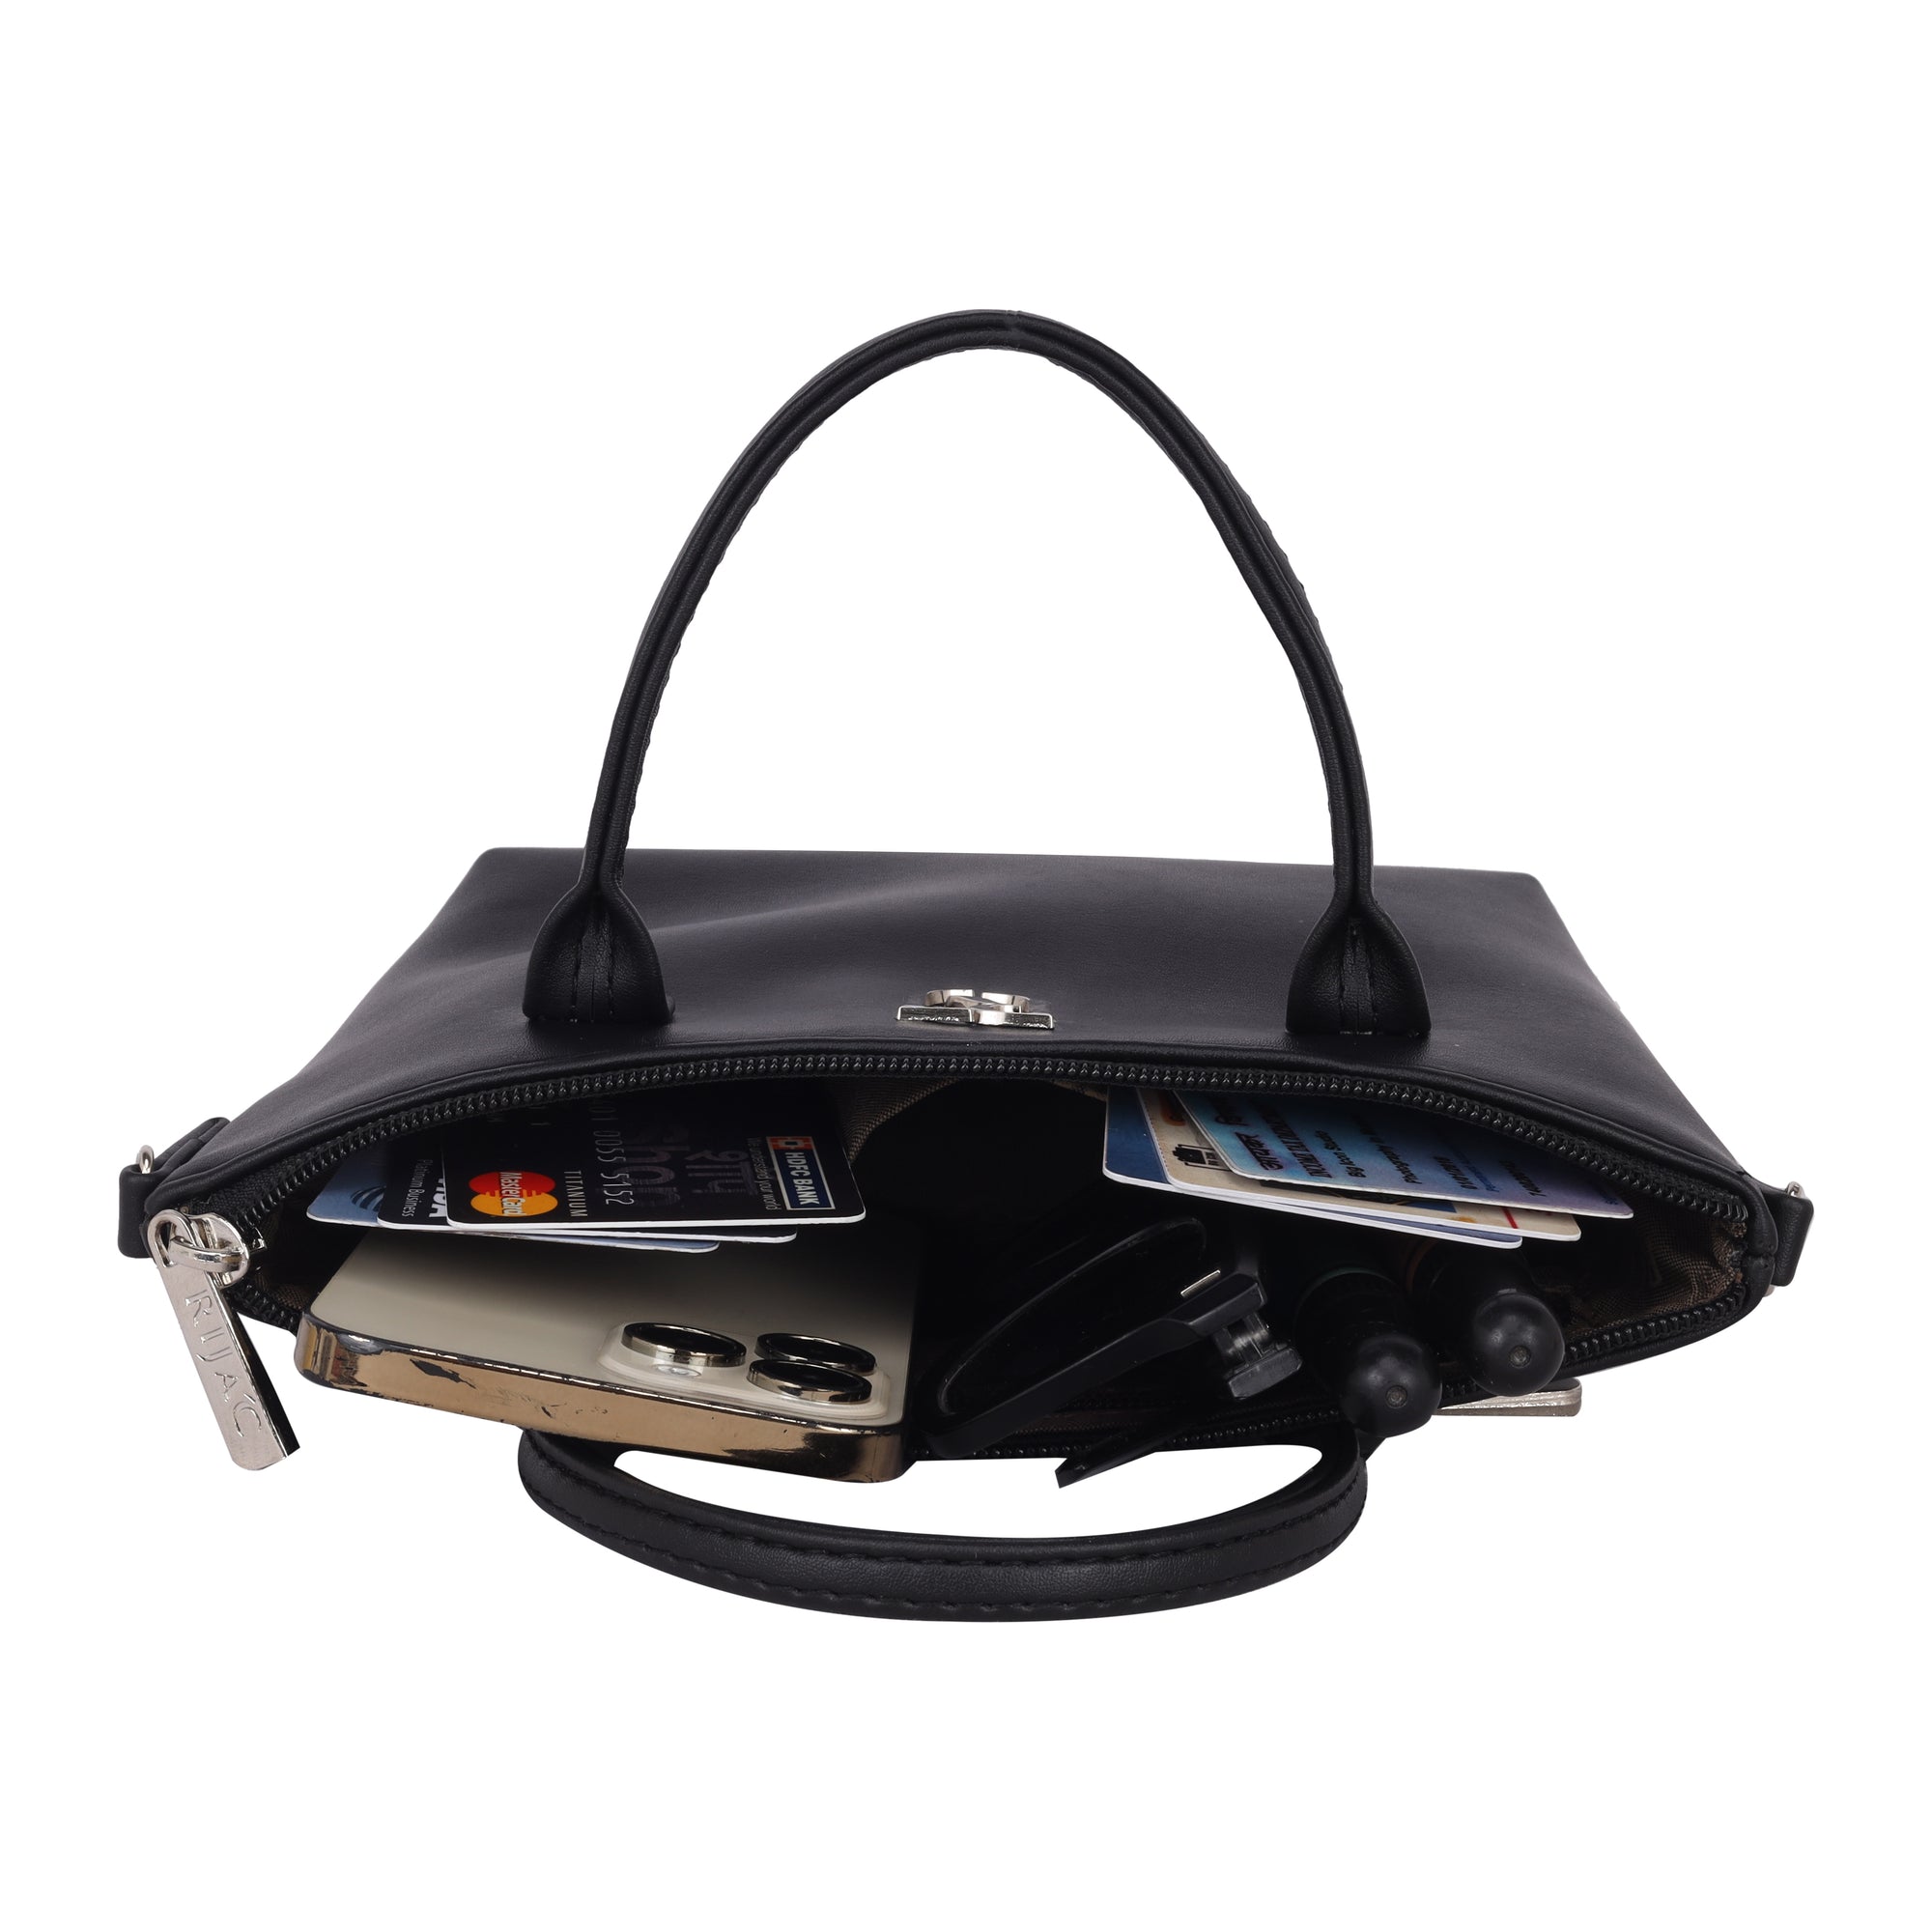 Black Pocket Comfy Sling Bag